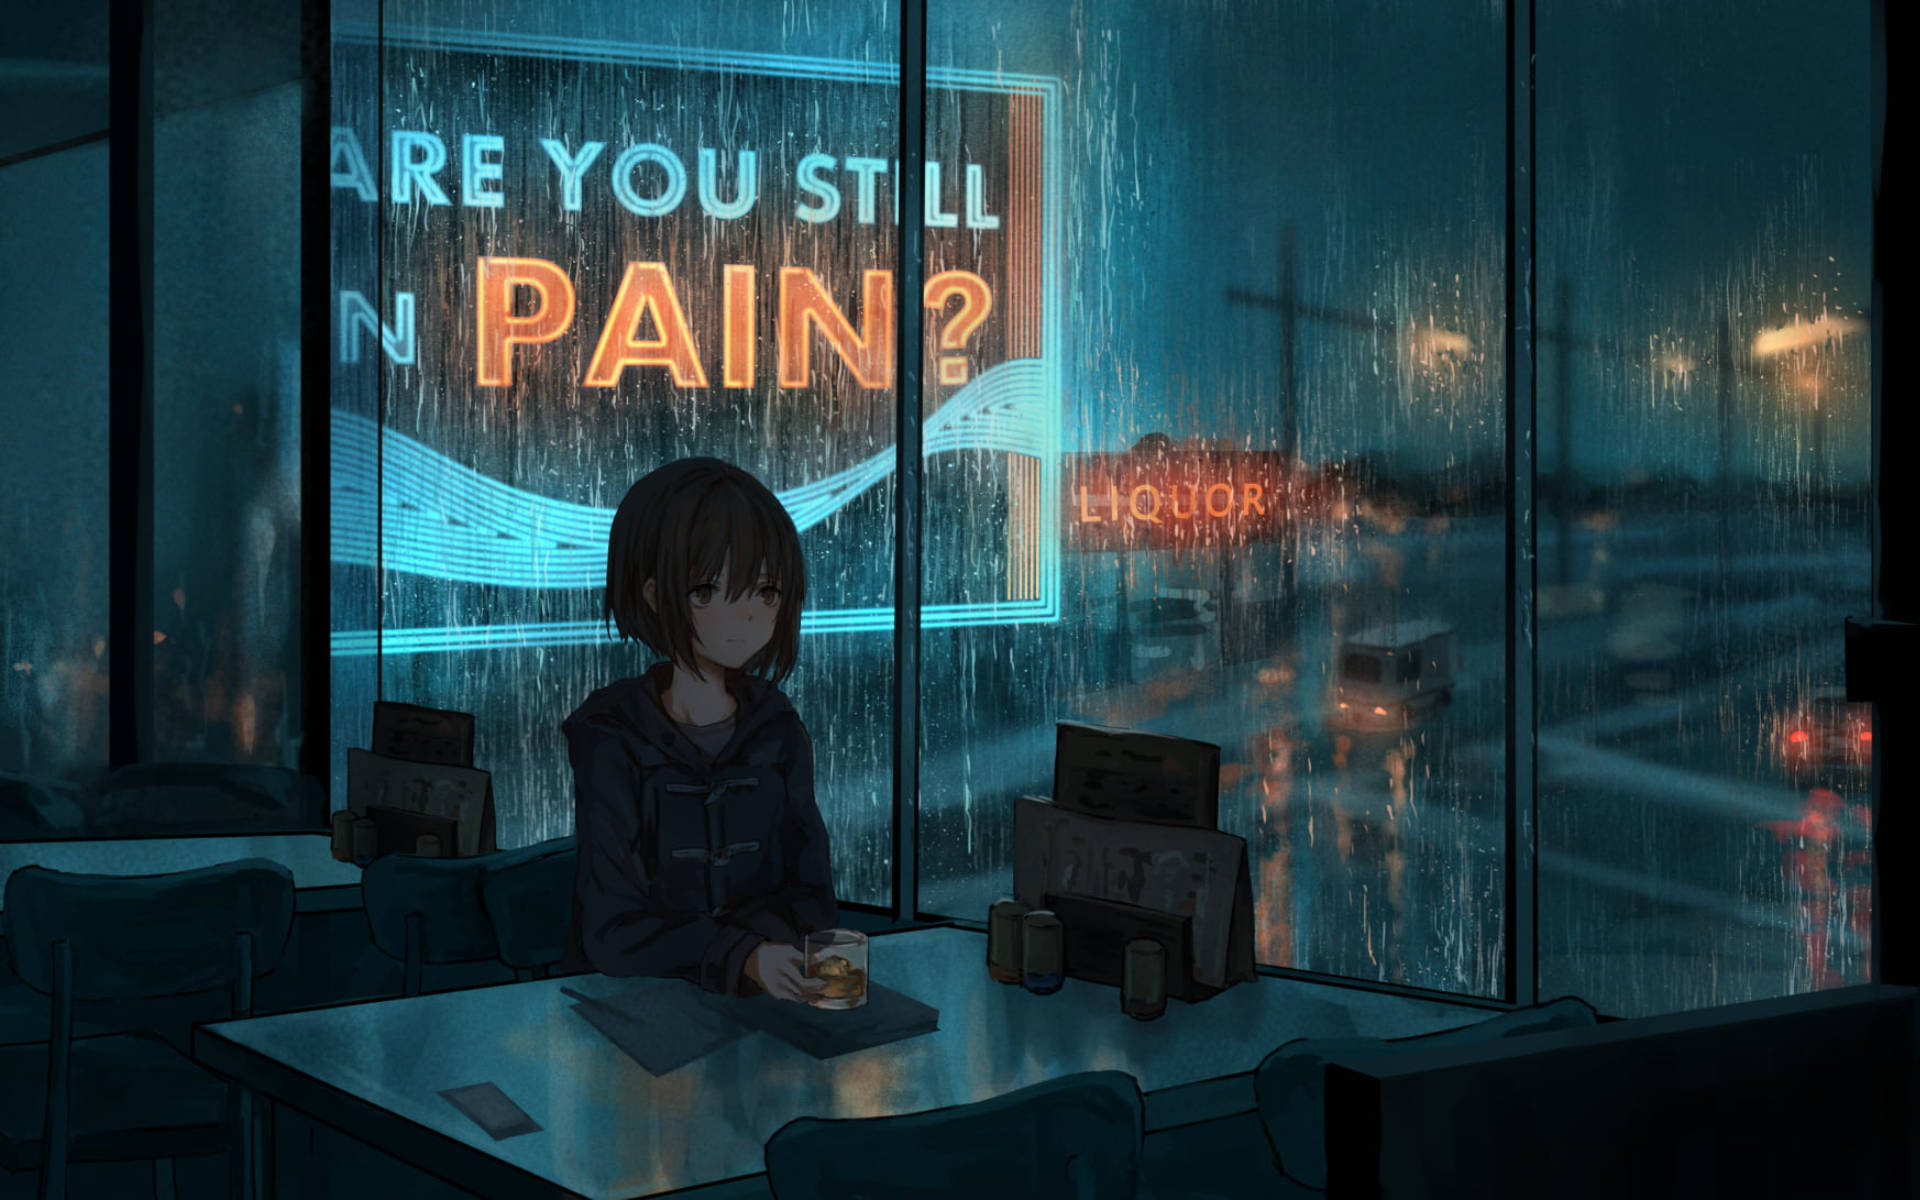 A Contemplative Anime Girl Alone In A Cozy Café